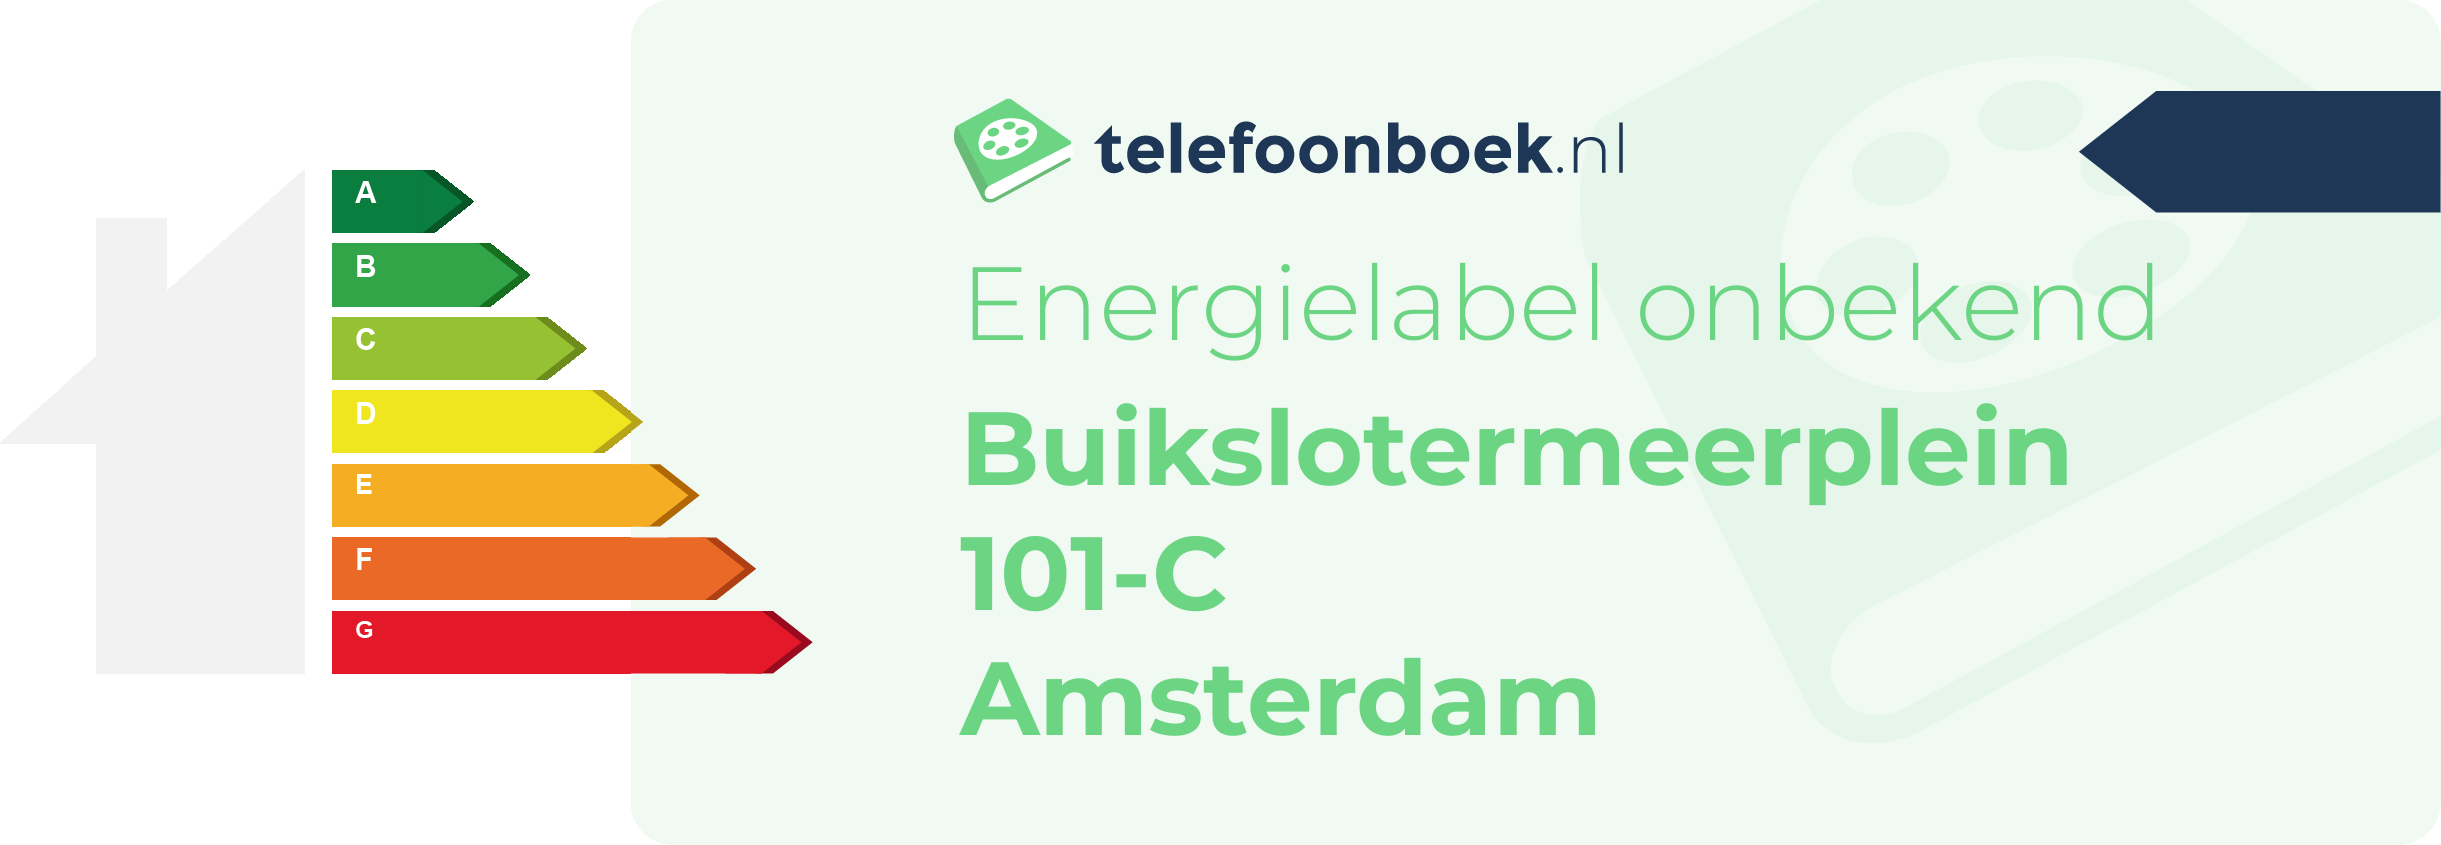 Energielabel Buikslotermeerplein 101-C Amsterdam